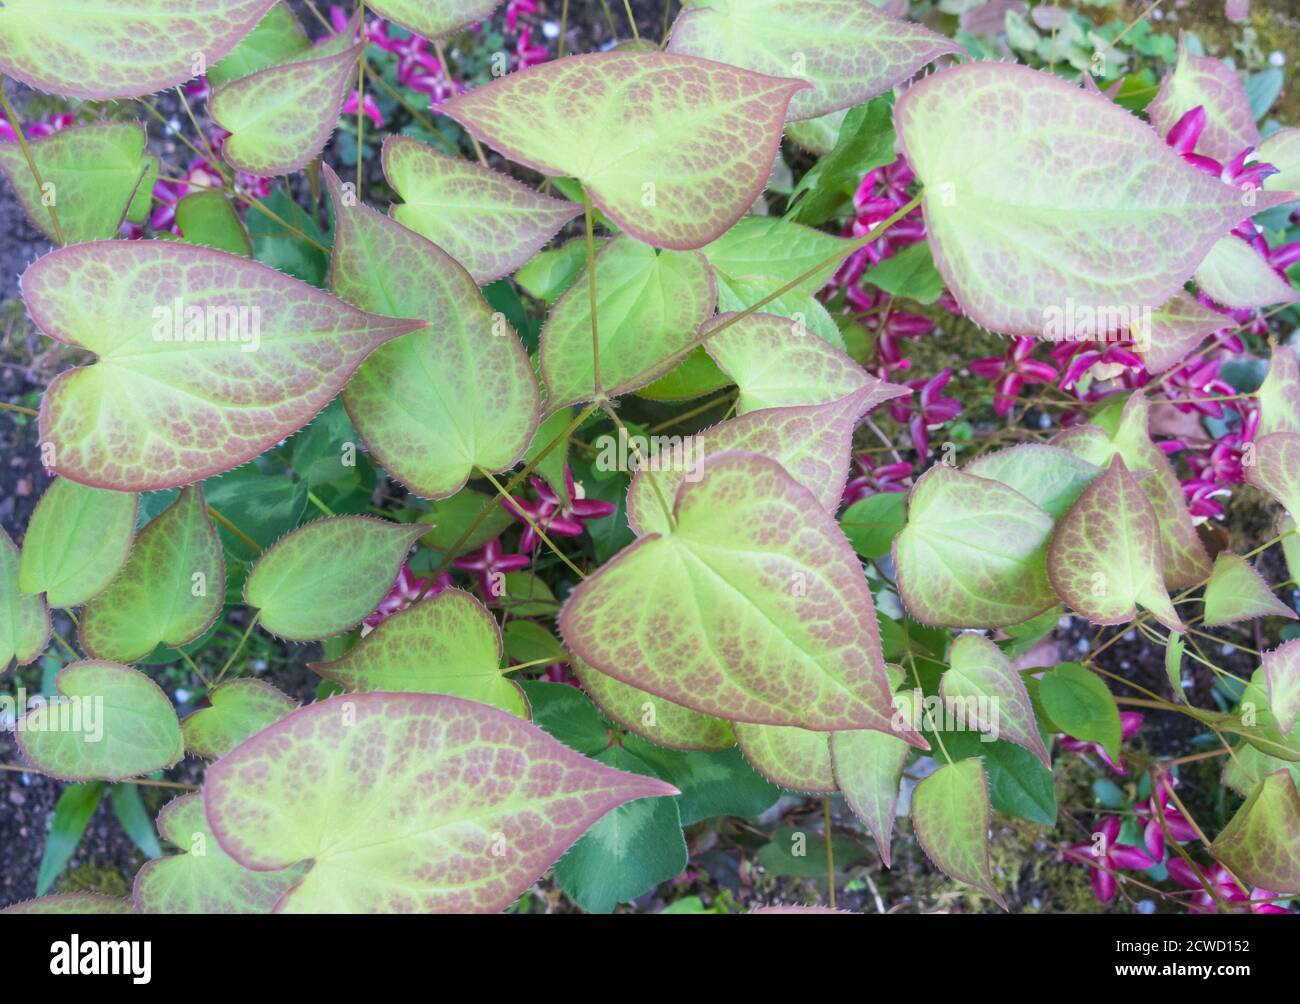 barrenwort blooming in the garden in spring Stock Photo